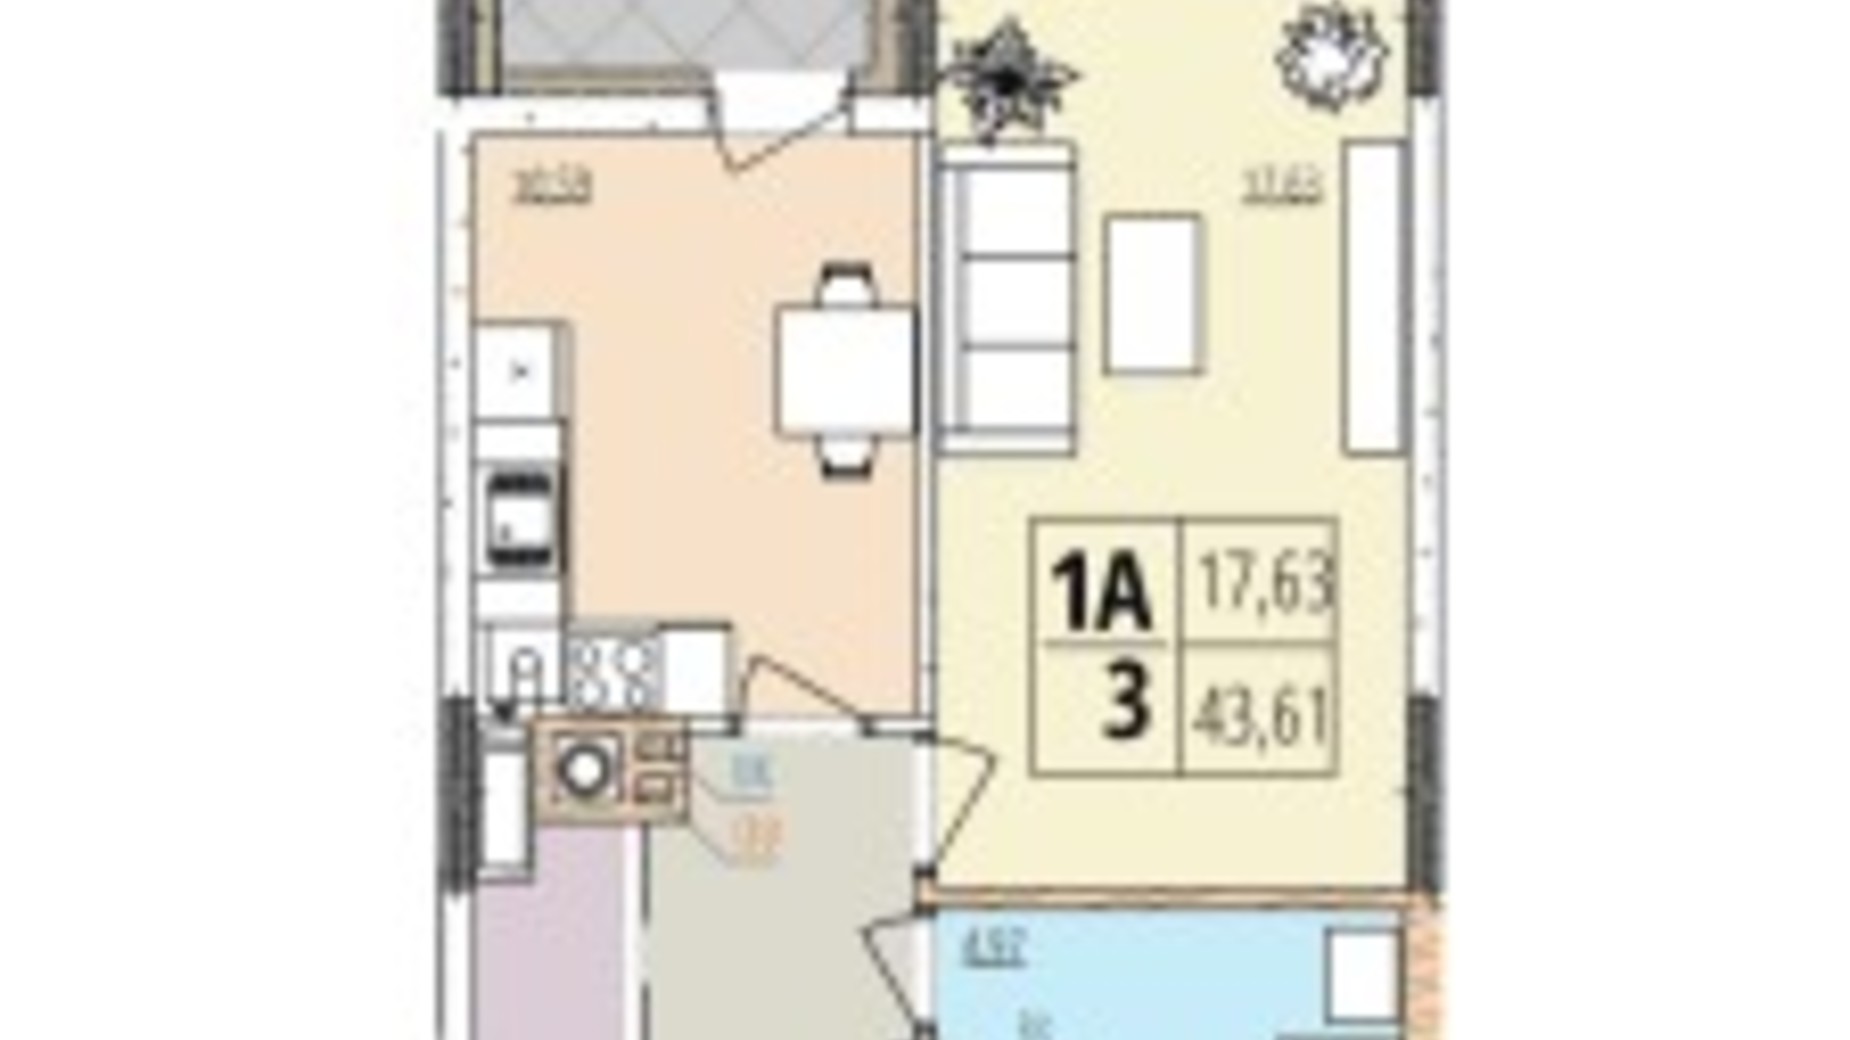 Планування 1-кімнатної квартири в ЖК Кельце 43.43 м², фото 694187